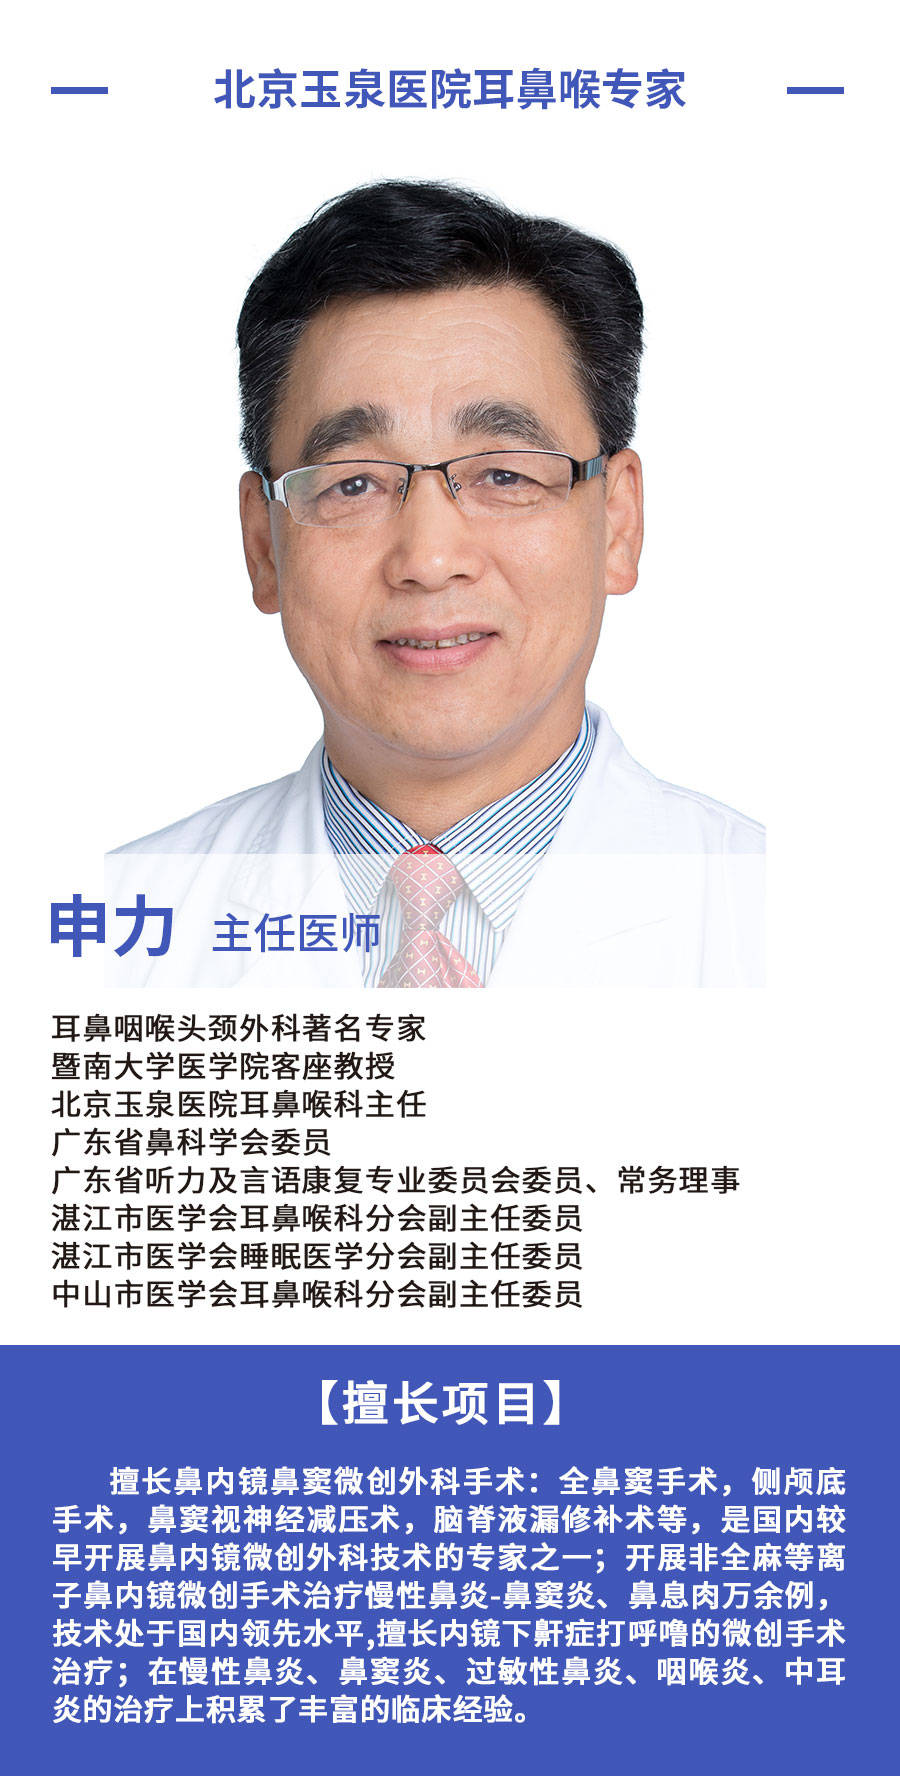 大家好,我是北京玉泉医院耳鼻喉科专家申力主任.